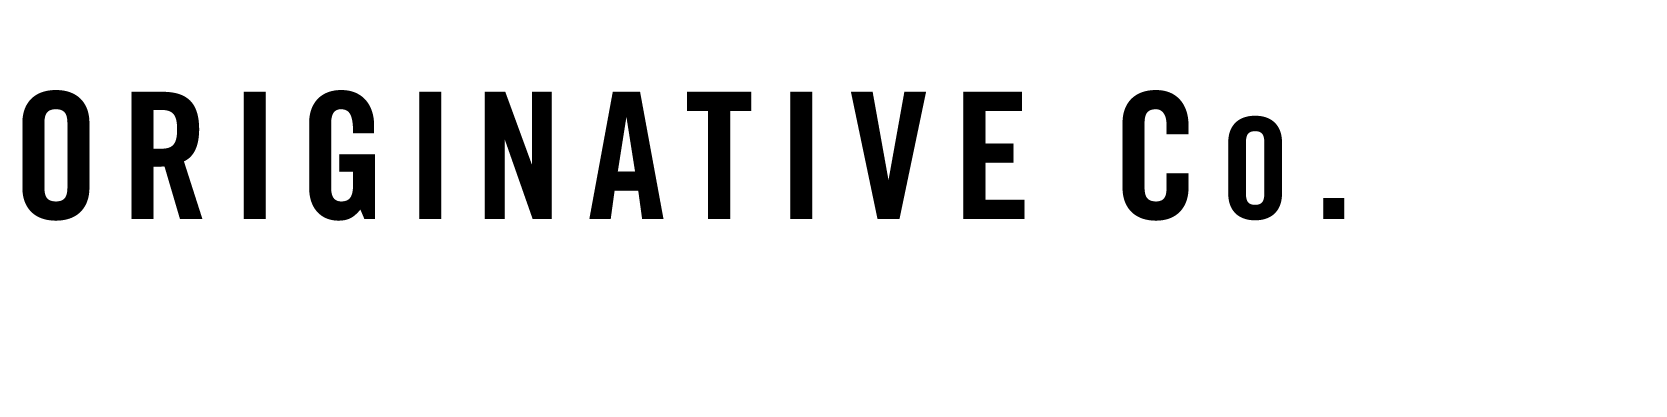 TypeMachina logo